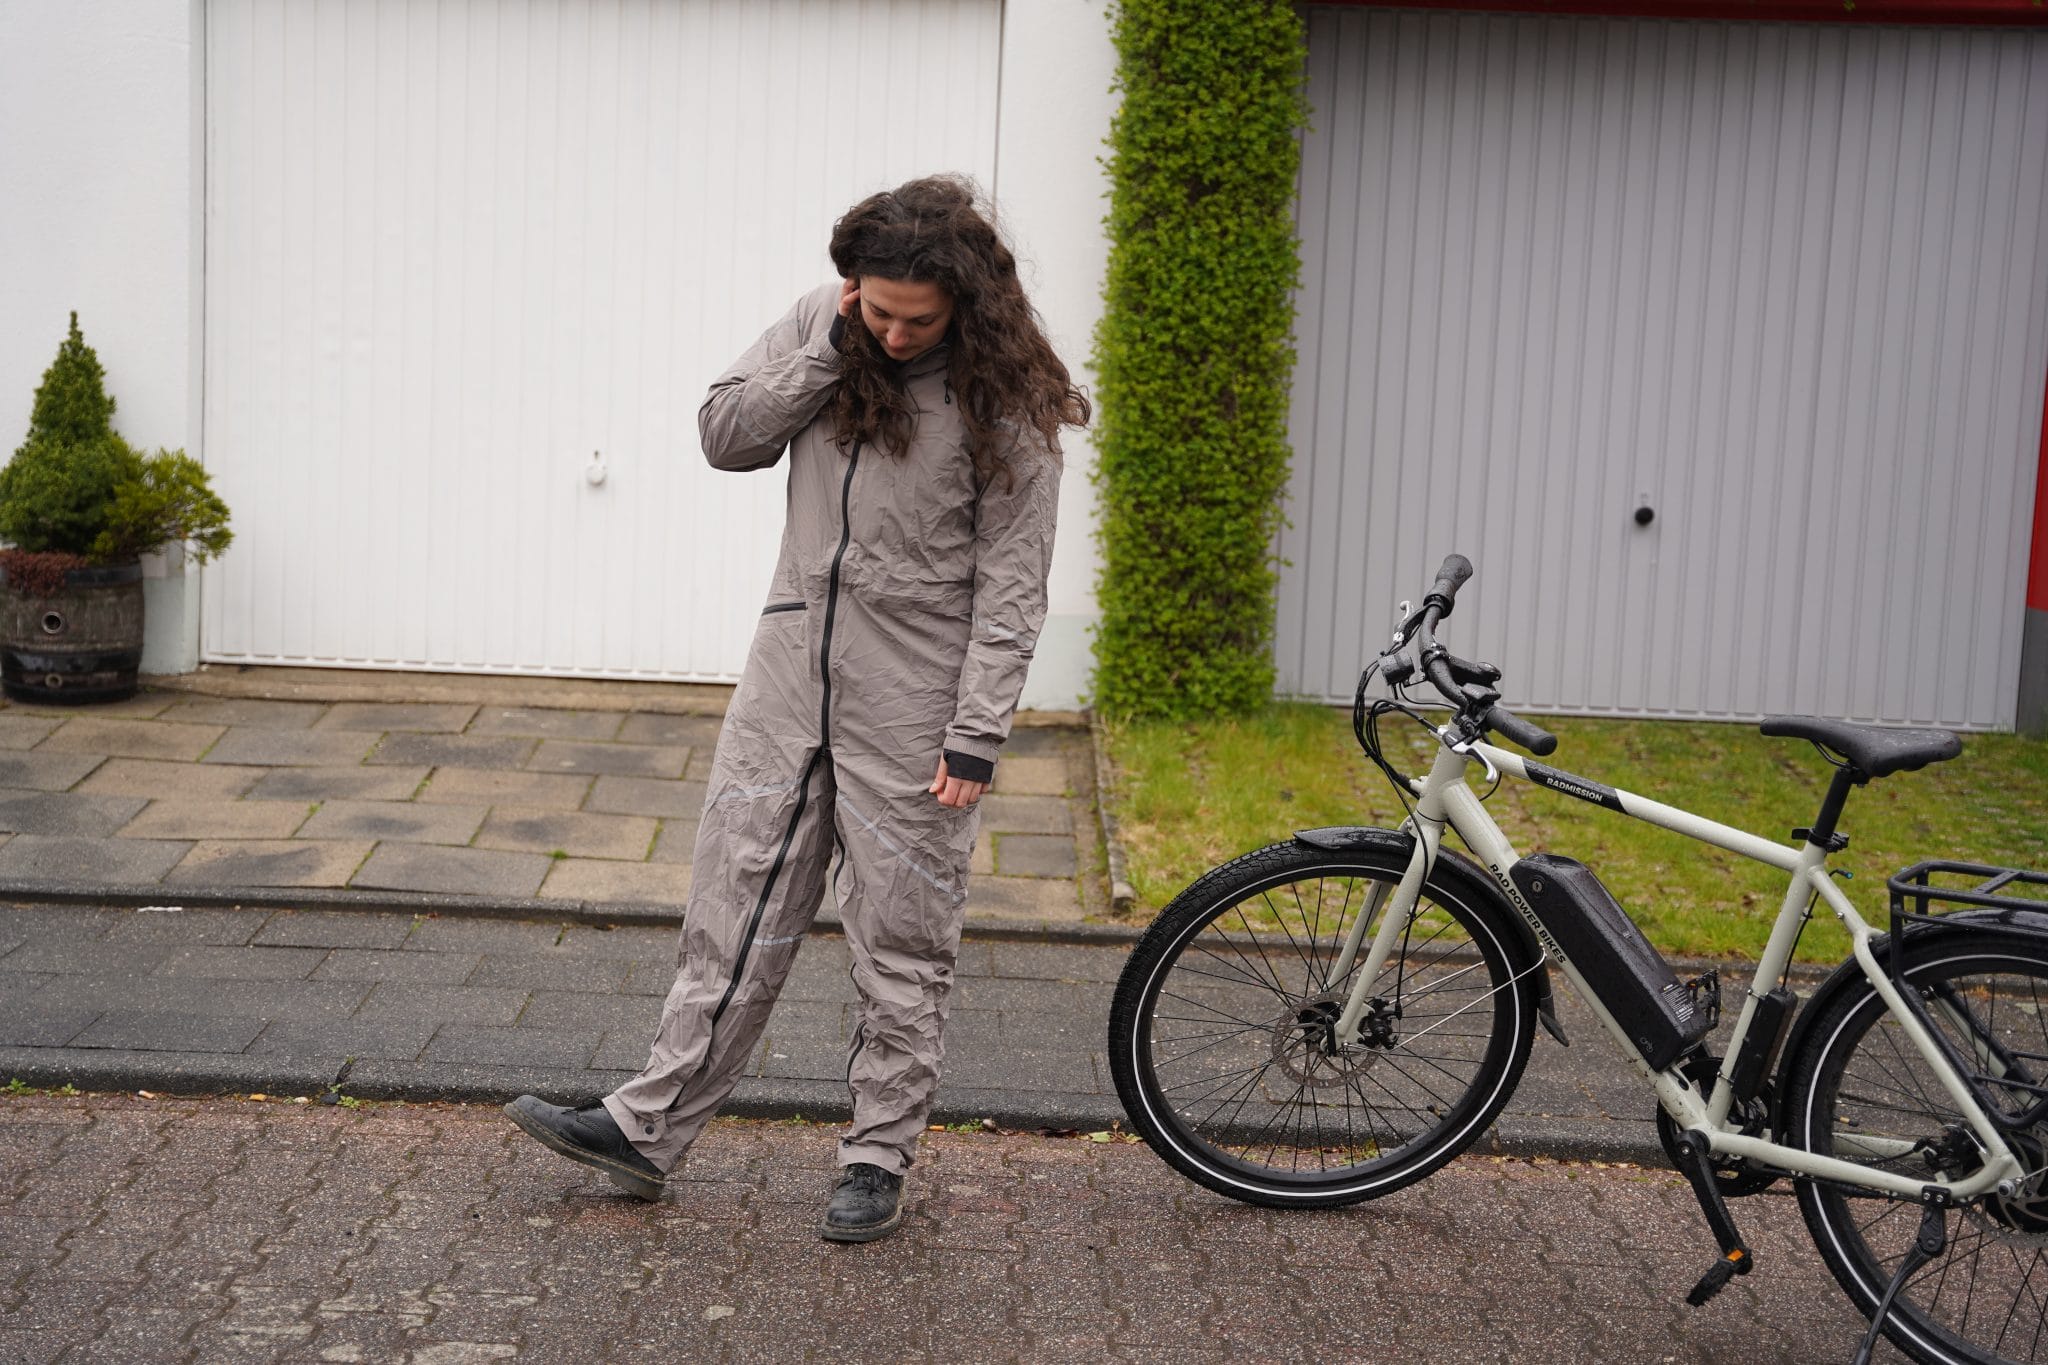 E-Bike | Fahrrad | Regenkleidung - A7300513 scaled - ebike-news.de